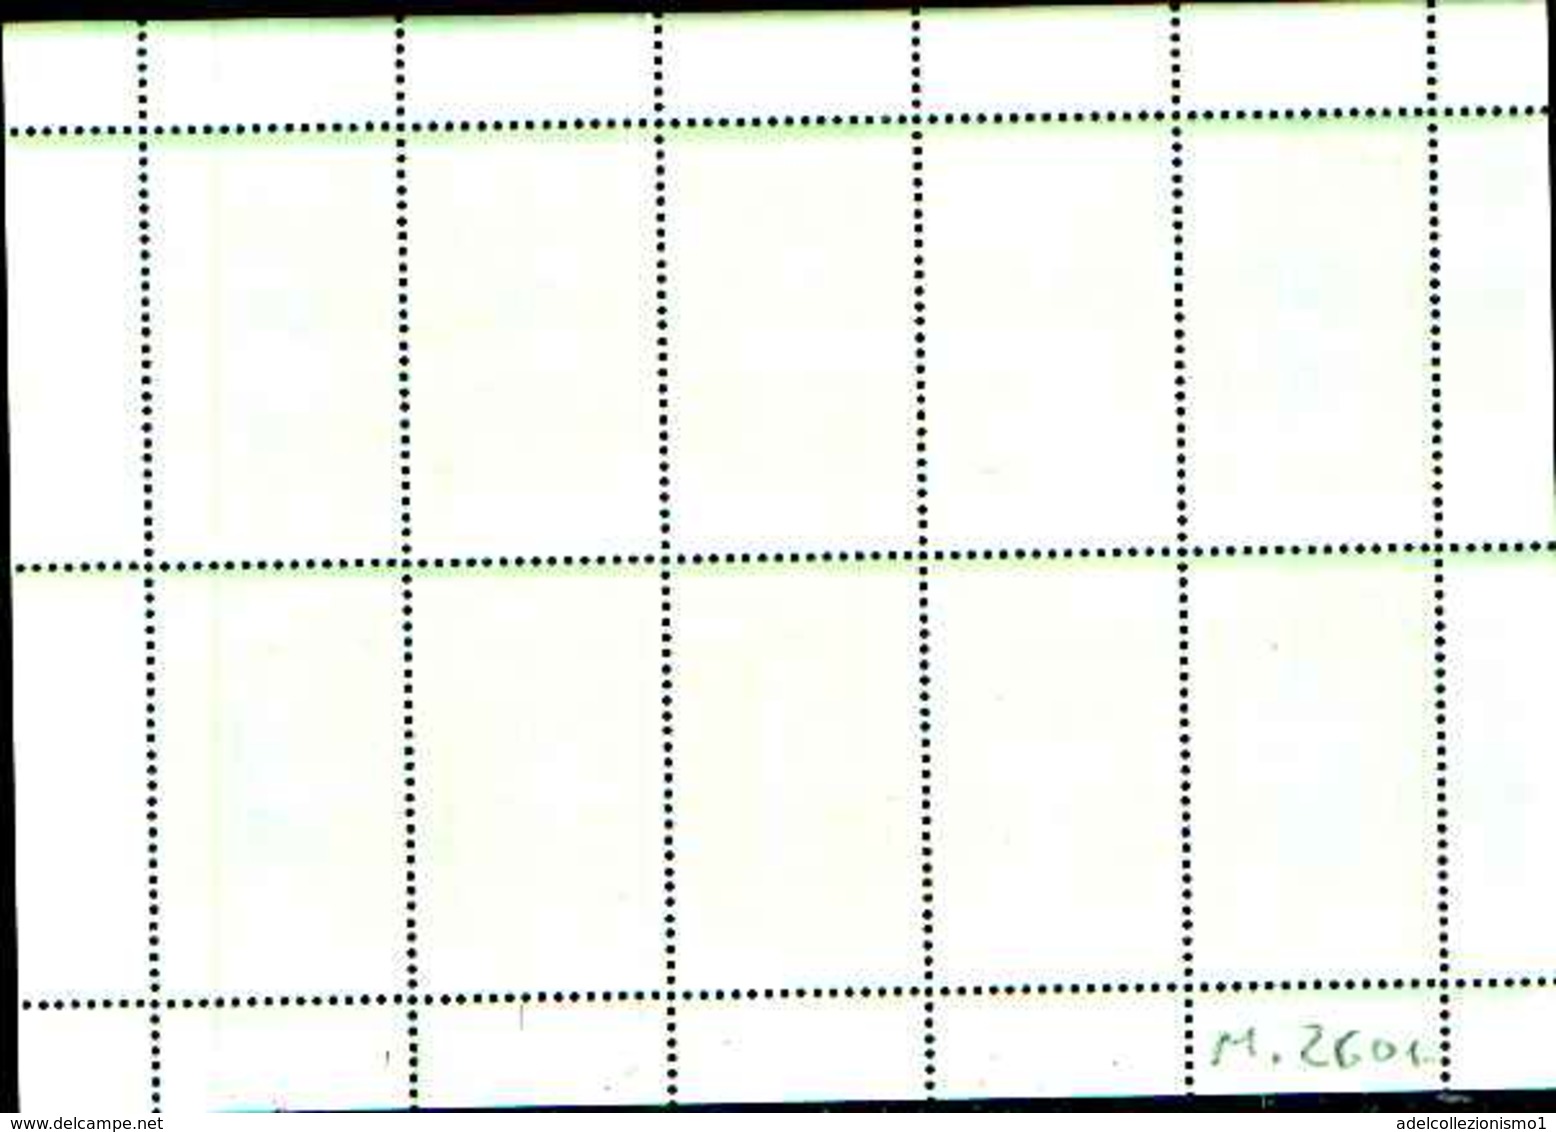 72263 ) LOTTO DI  FRANCOBOLLI DELLA -DDR -1981- N. 2601 ** RISPARMIO ENERGETICO FOGLIETTO DI 10 F. MNH++ - 1. Tag - FDC (Ersttagblätter)